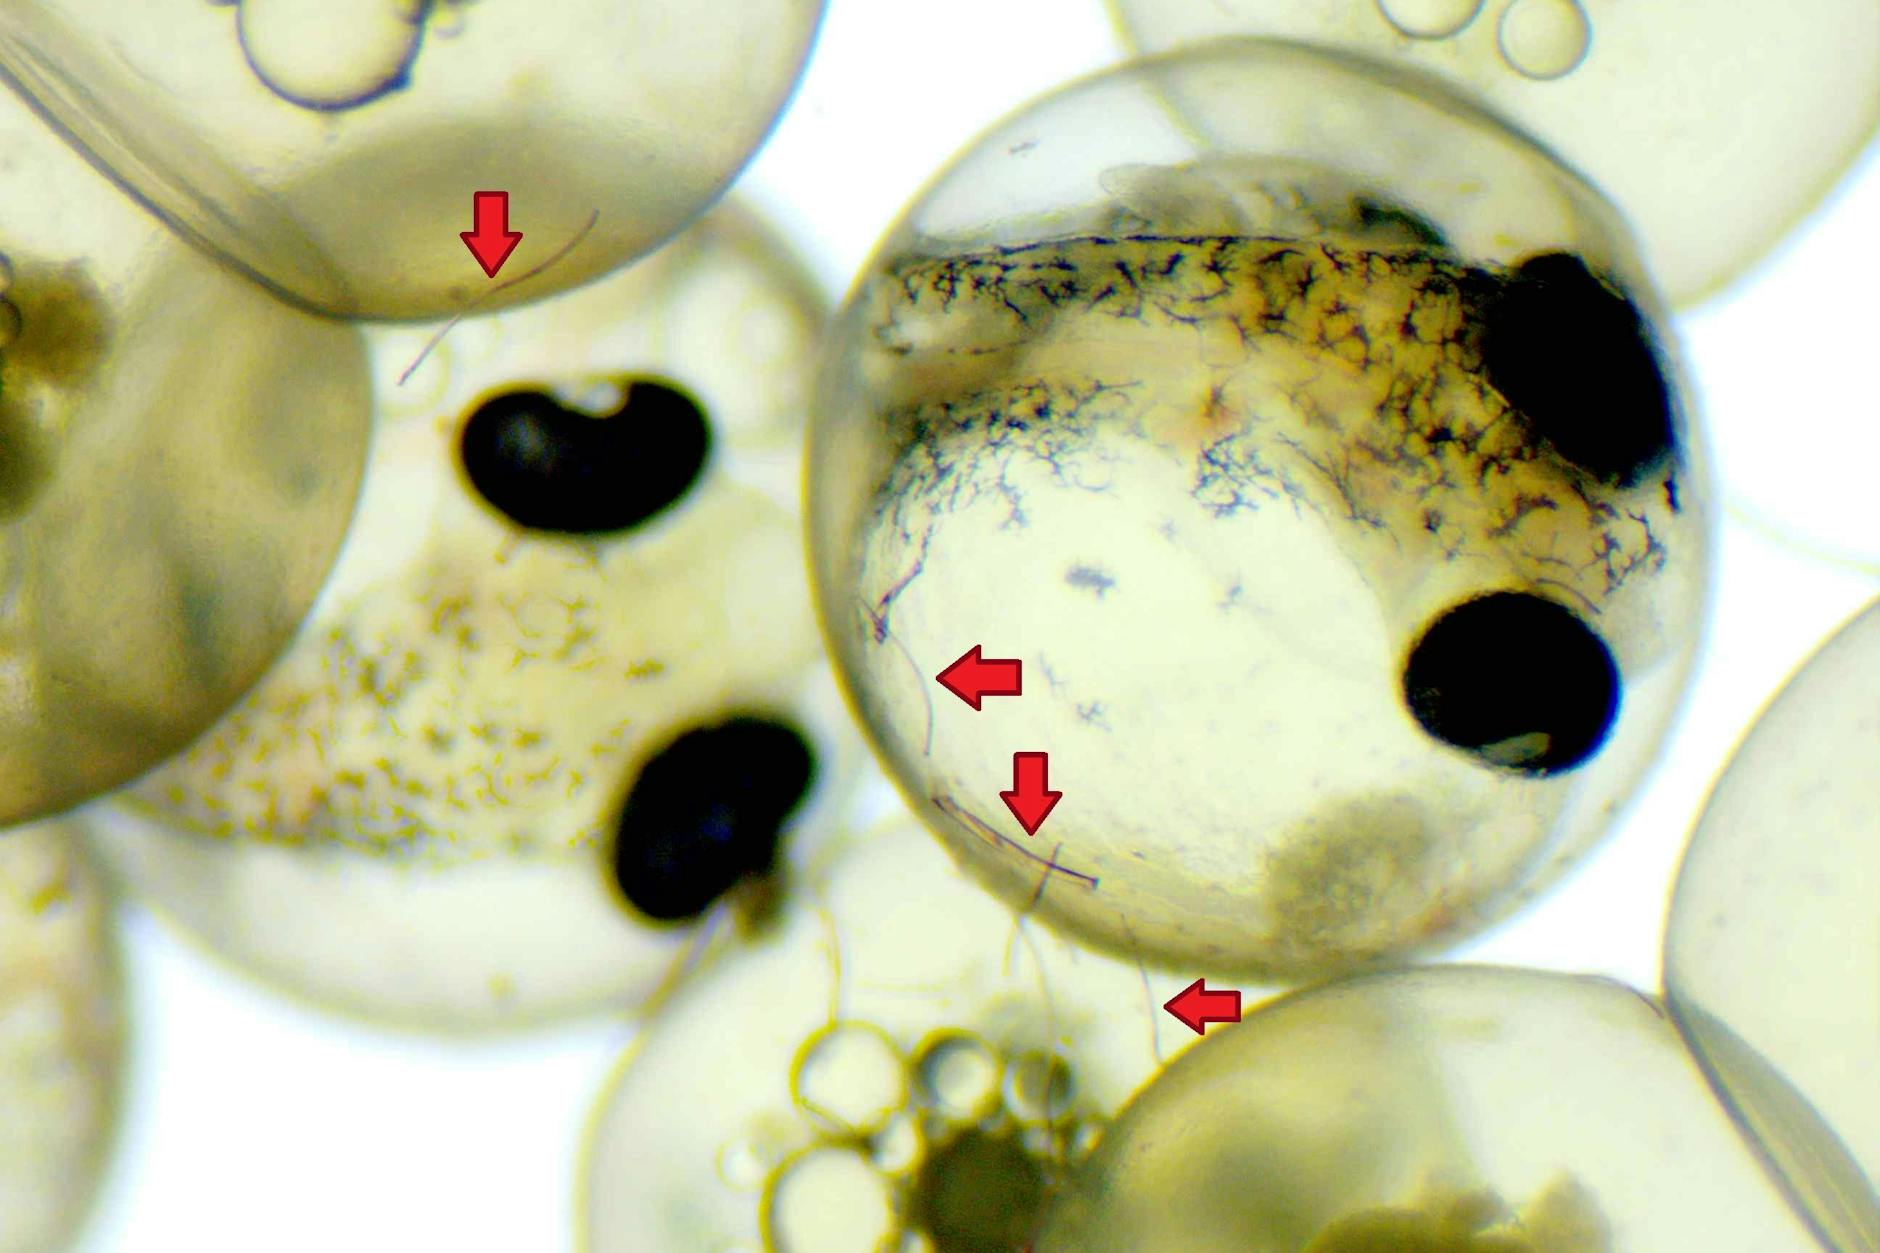 Fisch-Embryonen in ihrer Eihülle. Sie entwickeln sich trotz anhaftender Mikroplastikfasern (Pfeile) unbeschadet.